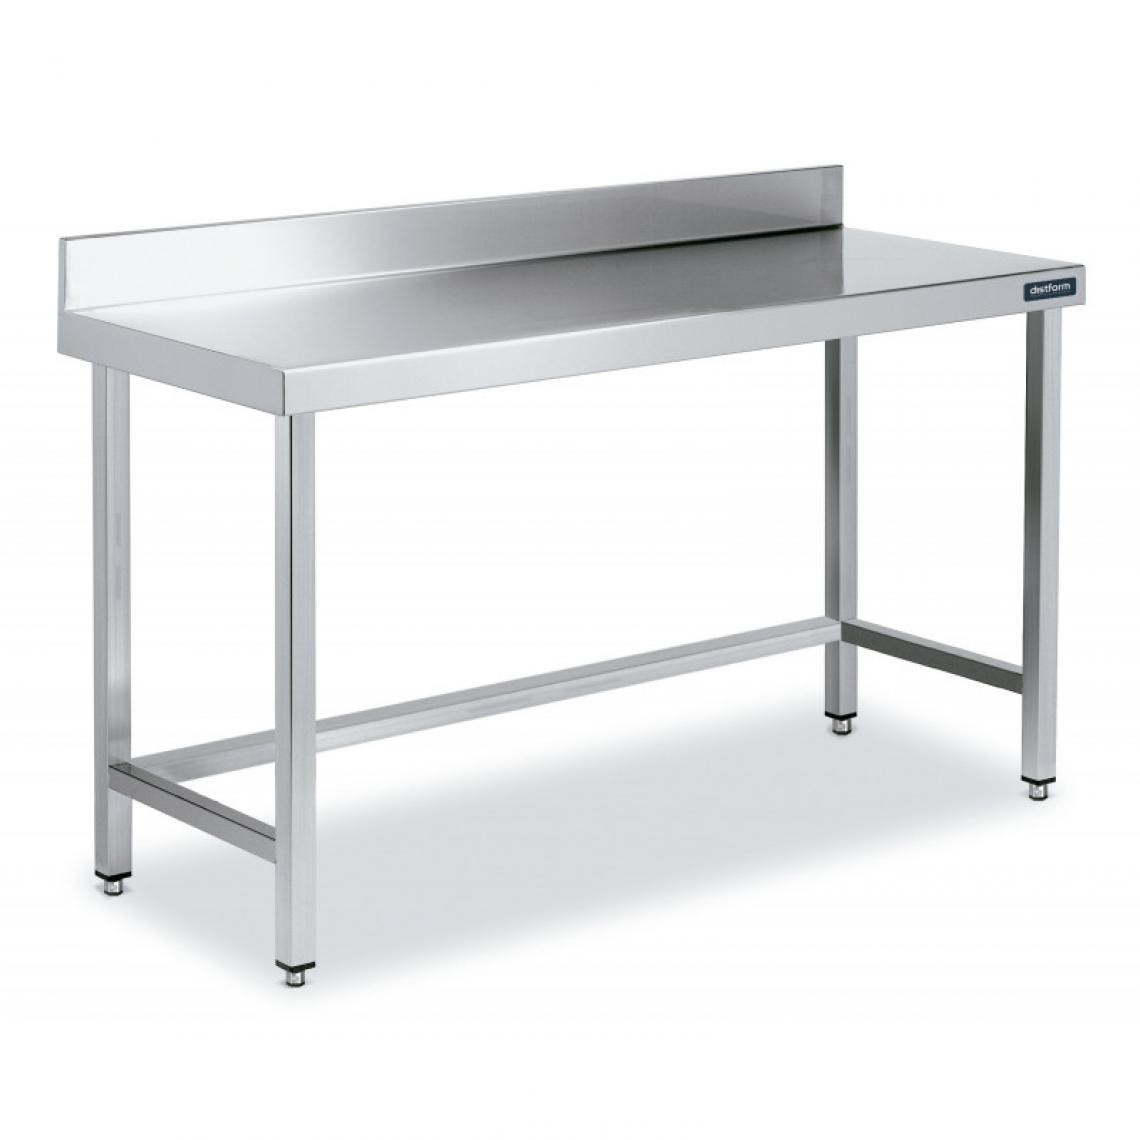 DISTFORM - Table Adossée en Inox avec Renforts Profondeur 550 mm - Distform - Acier inoxydable1400x550 - Tables à manger